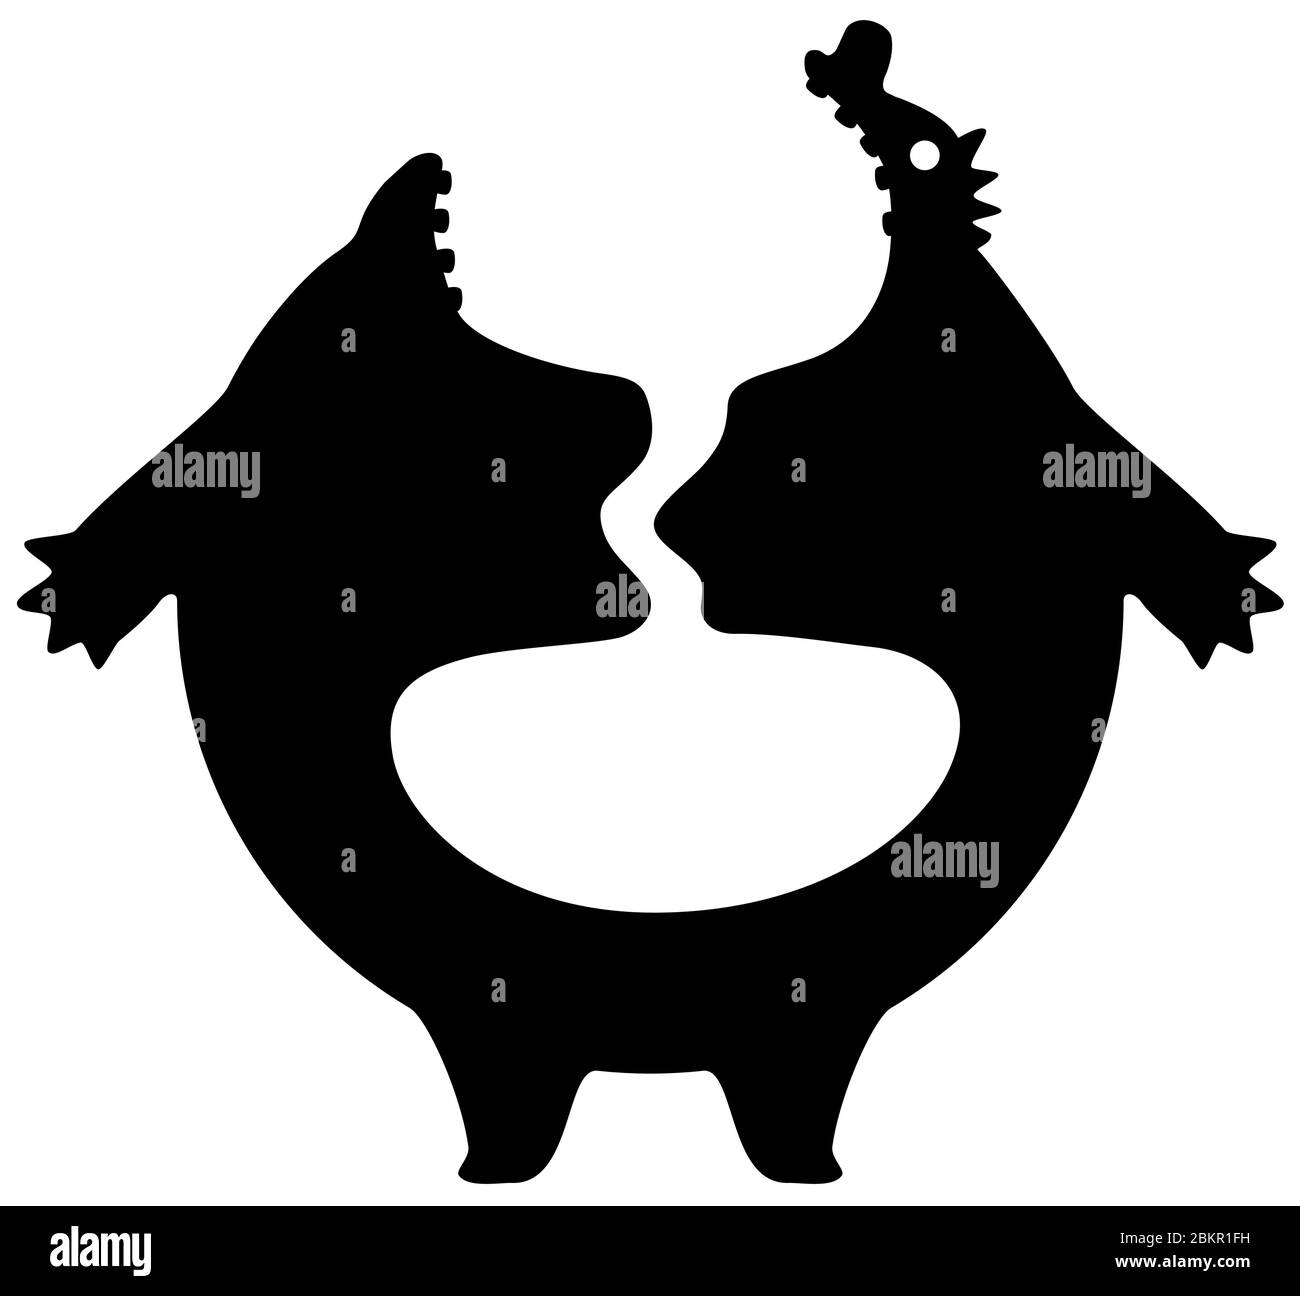 Fat stomaco cartone animato carattere nero silhouette, illustrazione vettoriale, orizzontale, isolato, su bianco Illustrazione Vettoriale